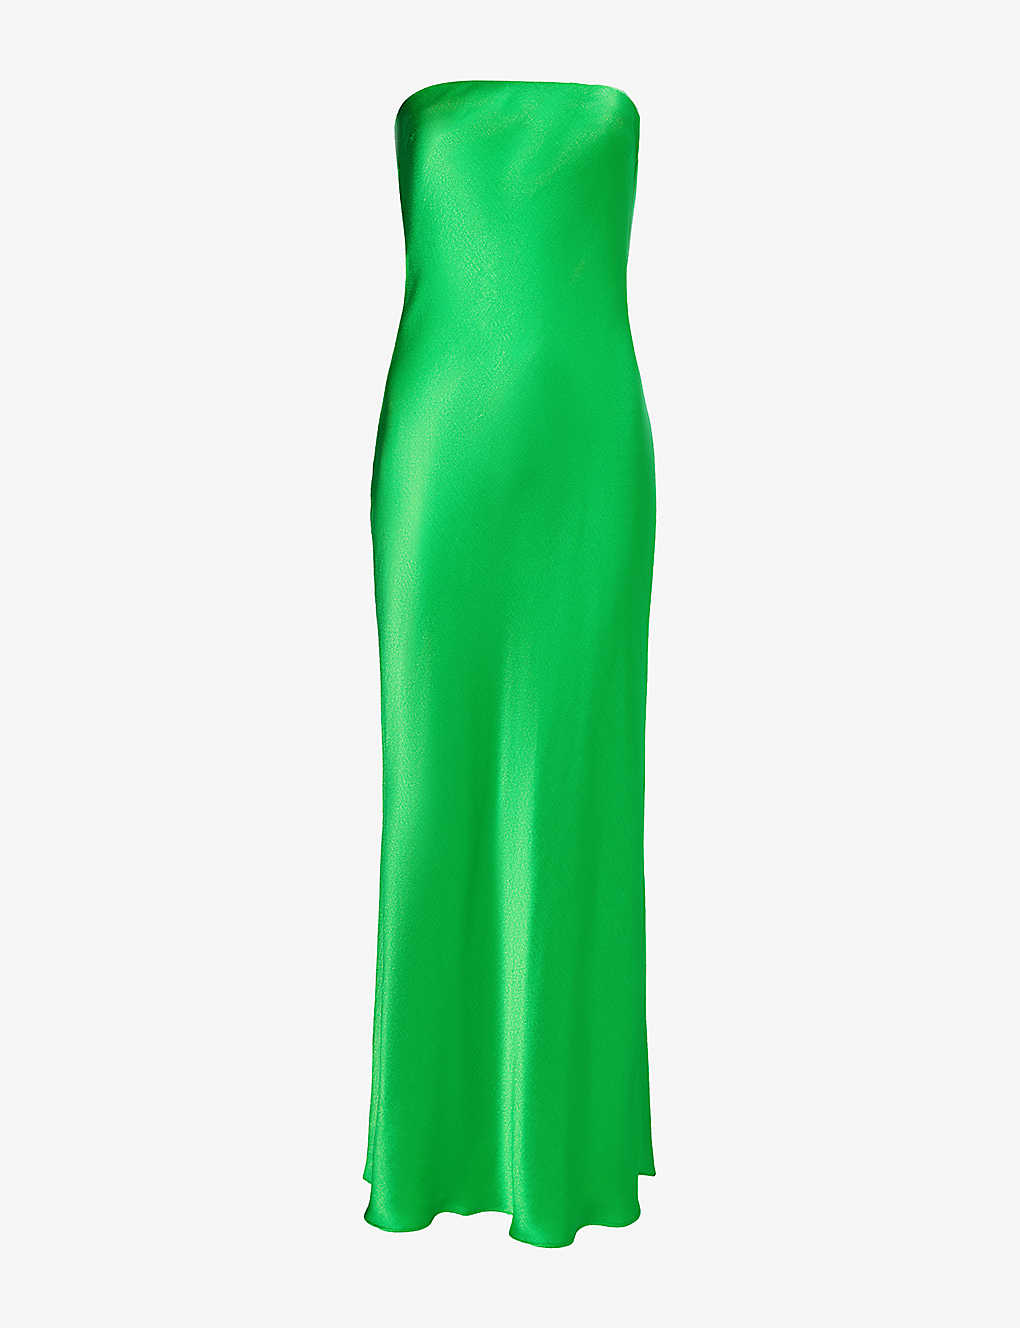 Shop Bec & Bridge Women's Emerald Moondance Strapless Woven Maxi Dress